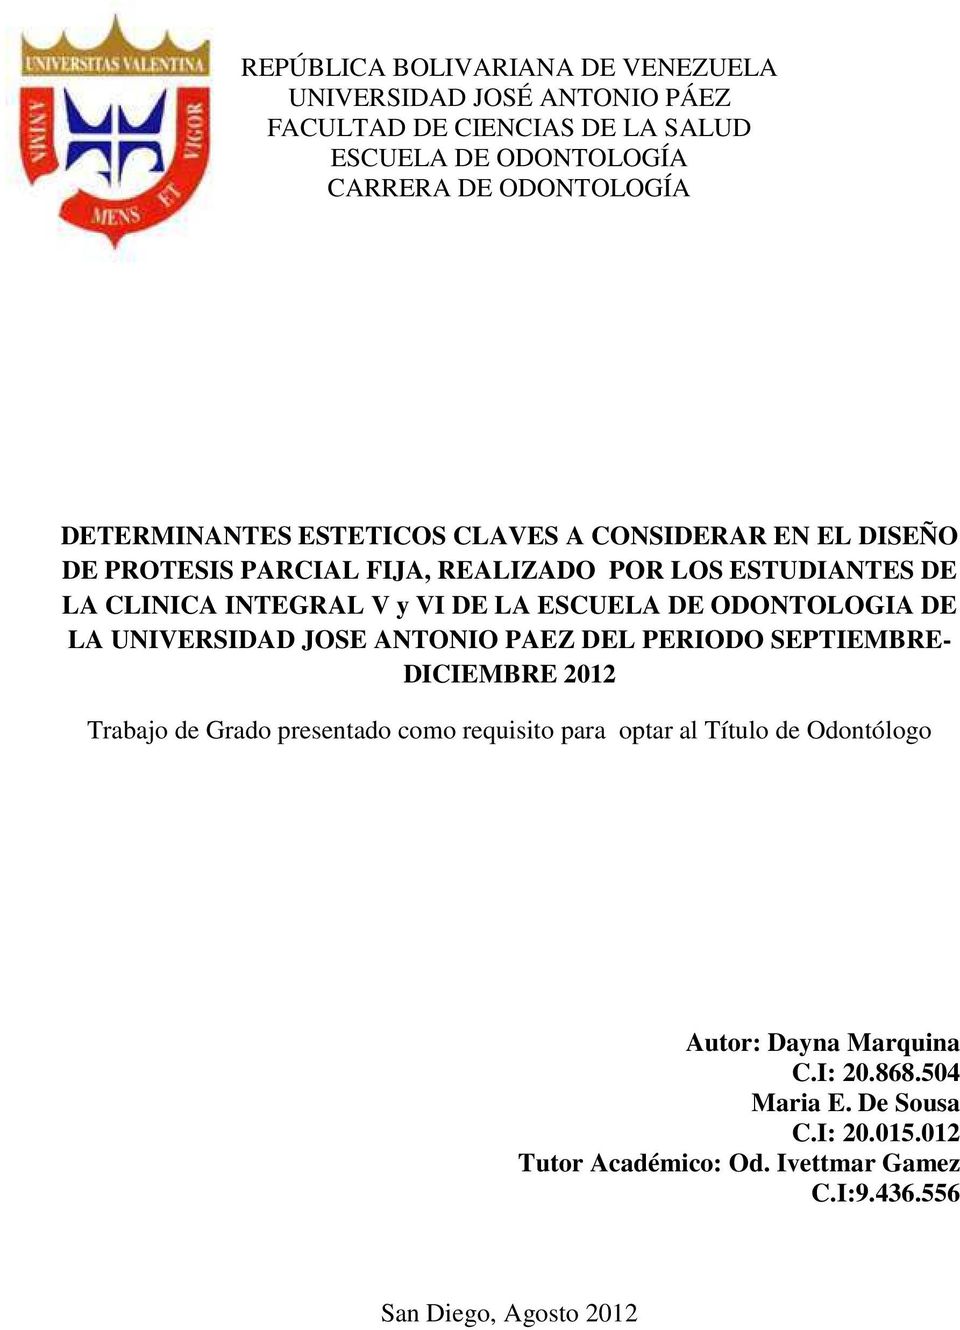 ESCUELA DE ODONTOLOGIA DE LA UNIVERSIDAD JOSE ANTONIO PAEZ DEL PERIODO SEPTIEMBRE- DICIEMBRE 2012 Trabajo de Grado presentado como requisito para optar